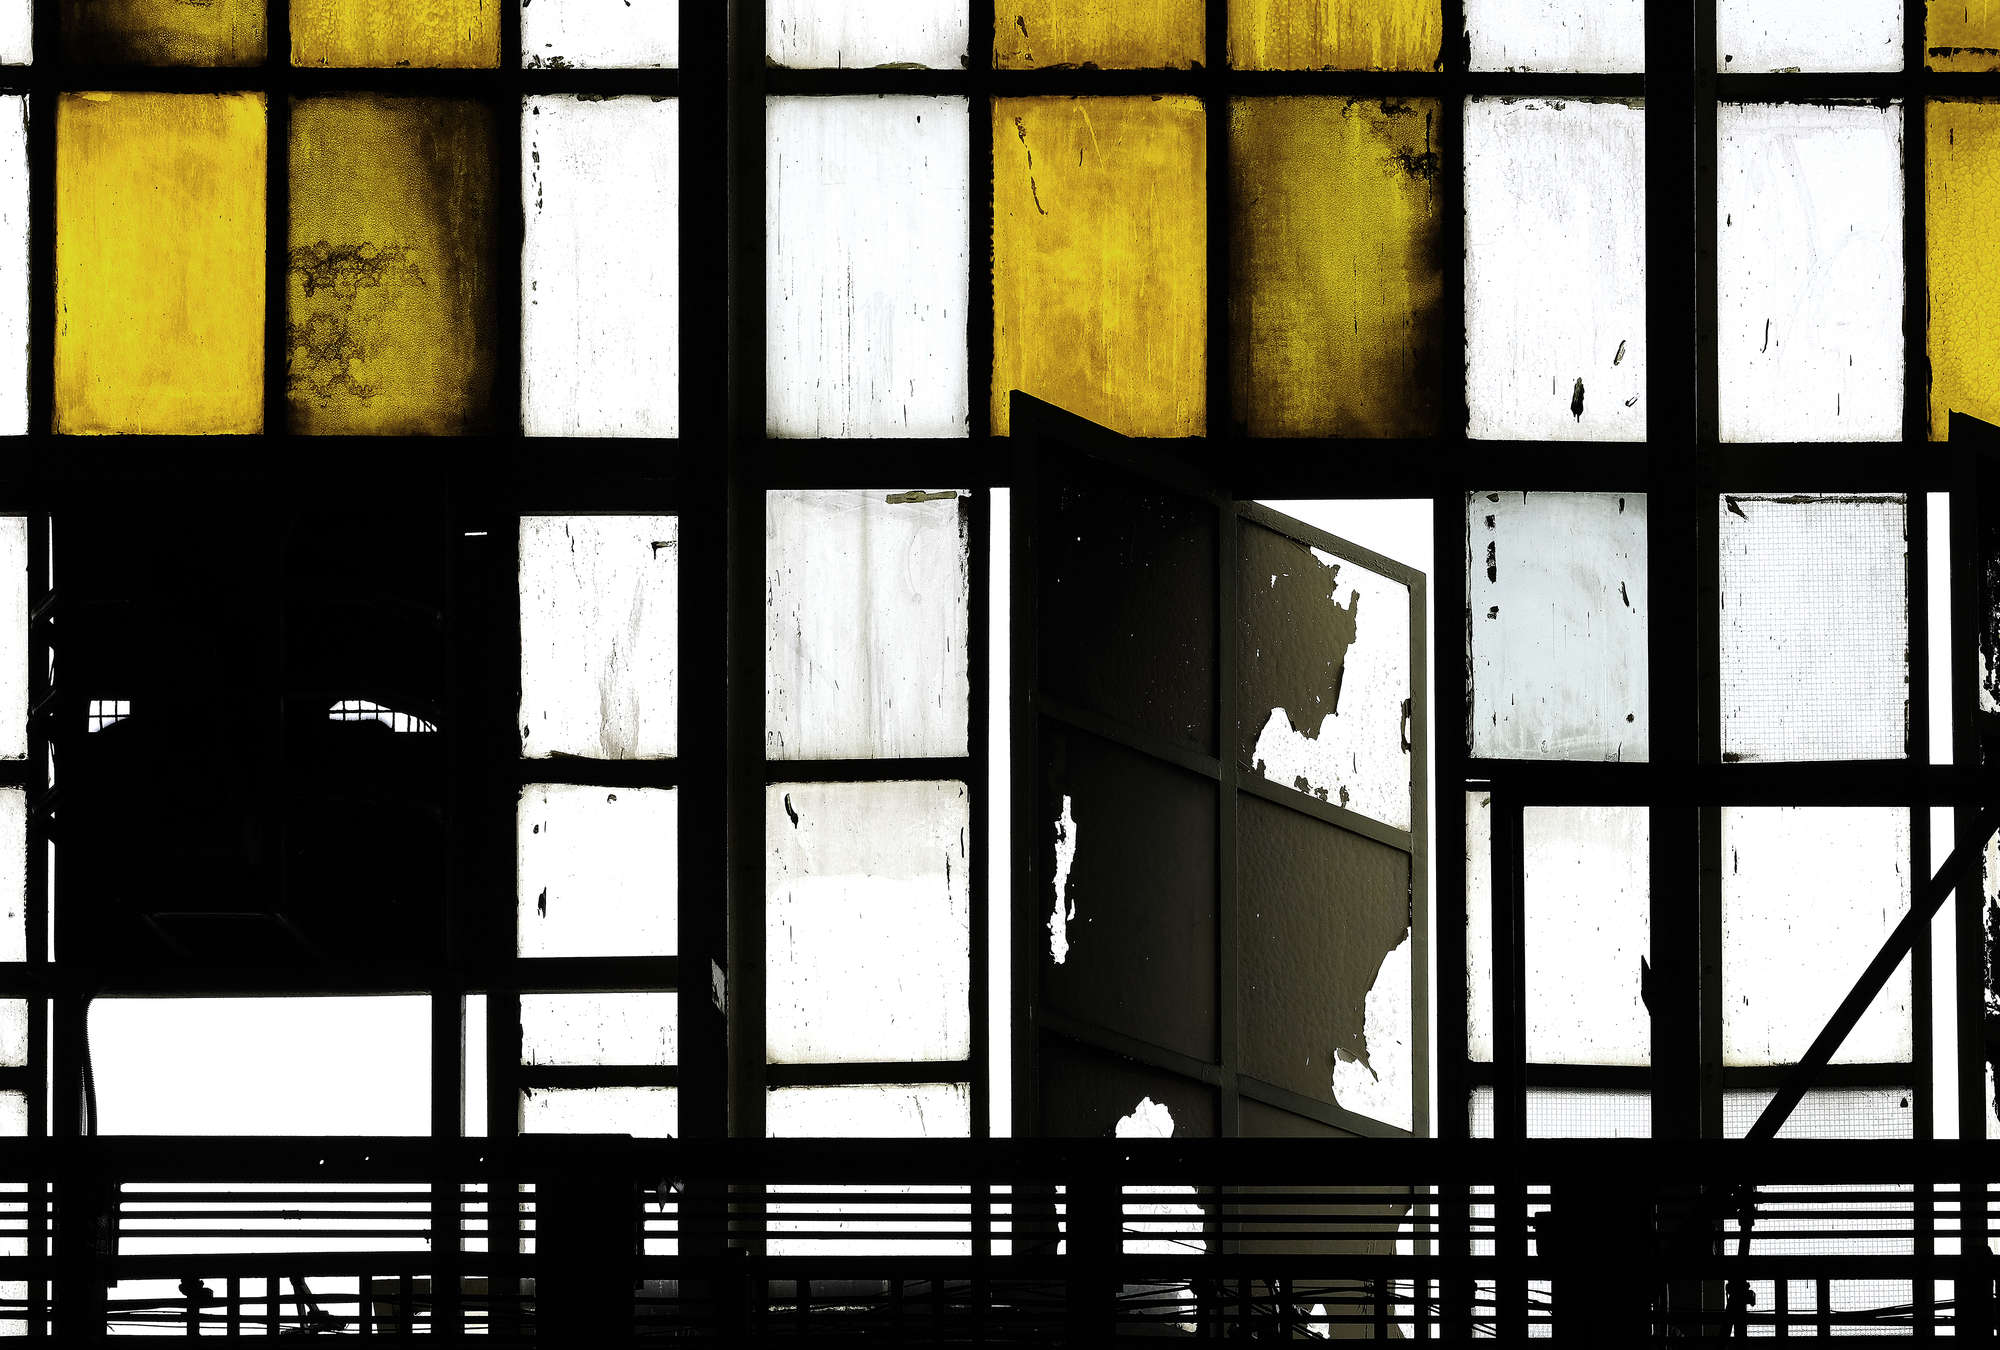             Bronx 1 - Fototapete, Loft mit Buntglas-Fenstern – Gelb, Schwarz | Premium Glattvlies
        